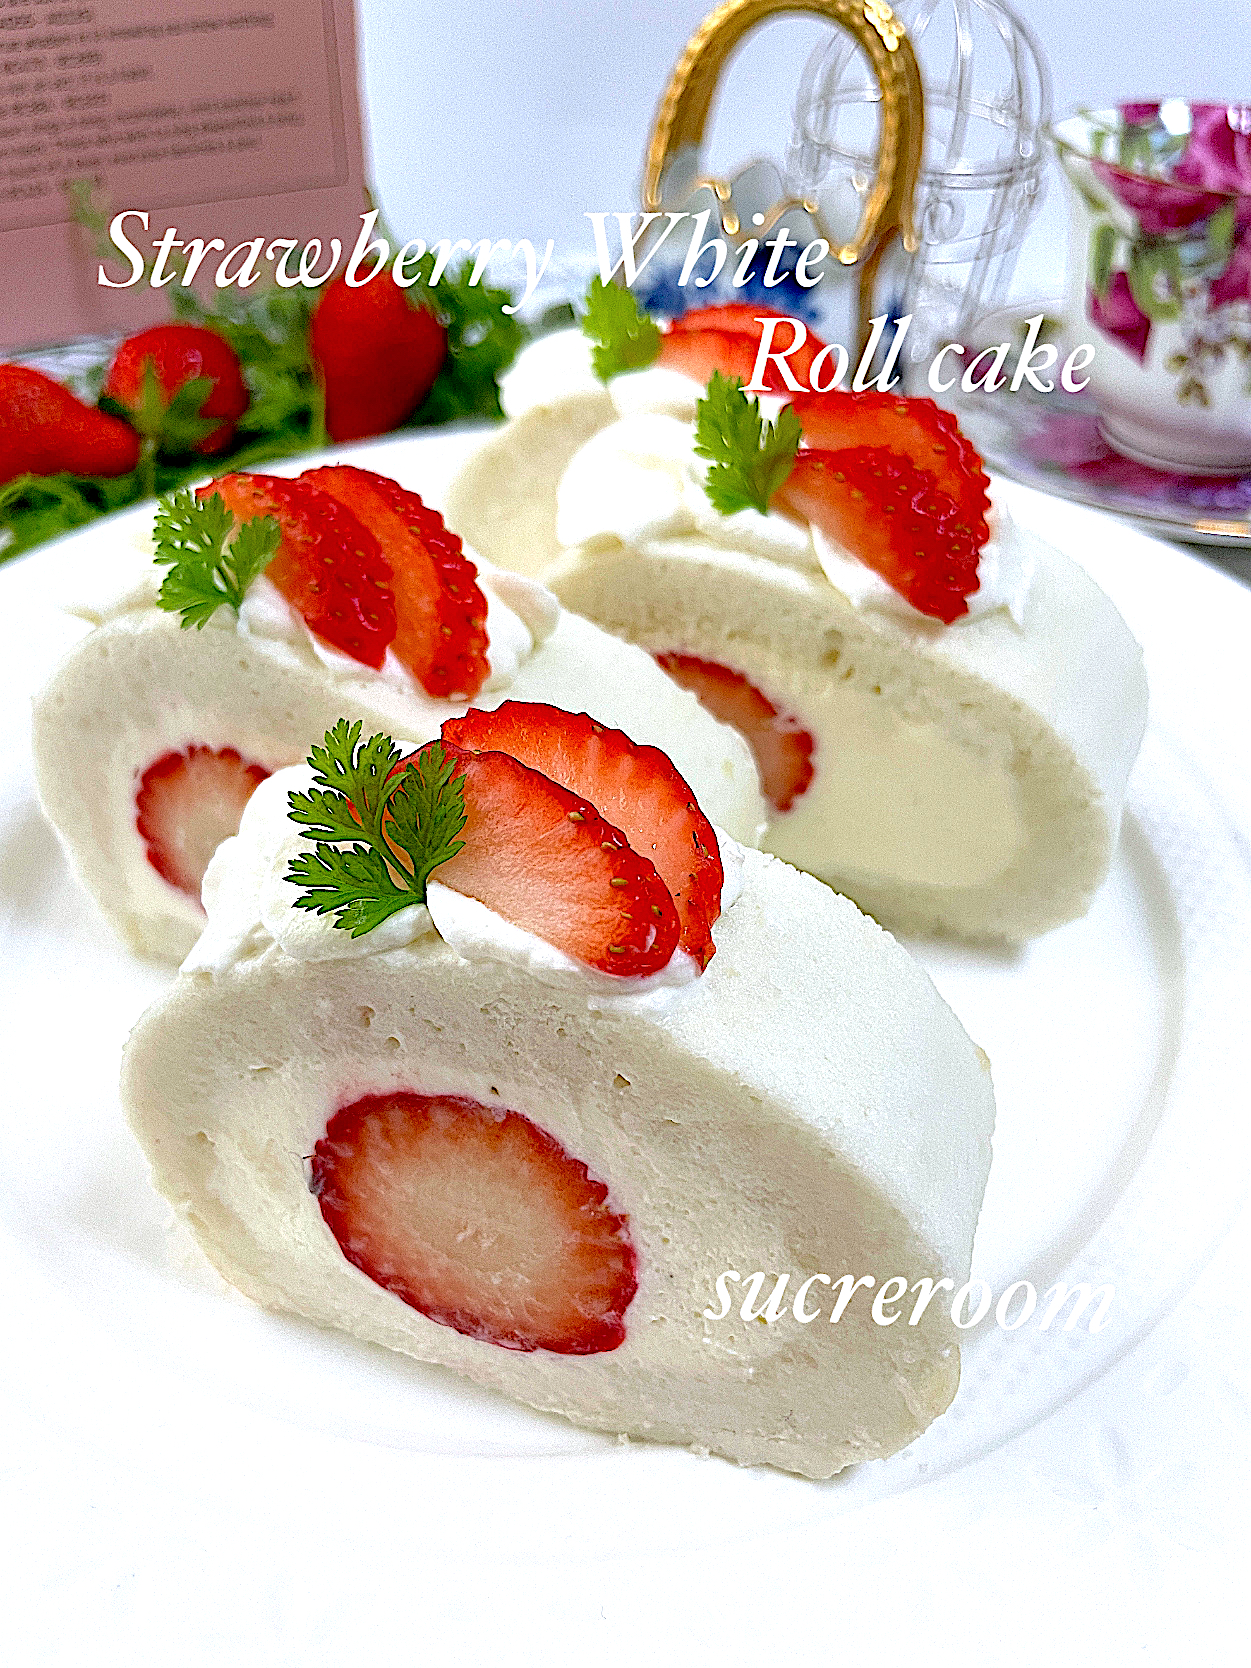 苺の白いロールケーキ作りました🌀🍓          (⑉• •⑉)♡